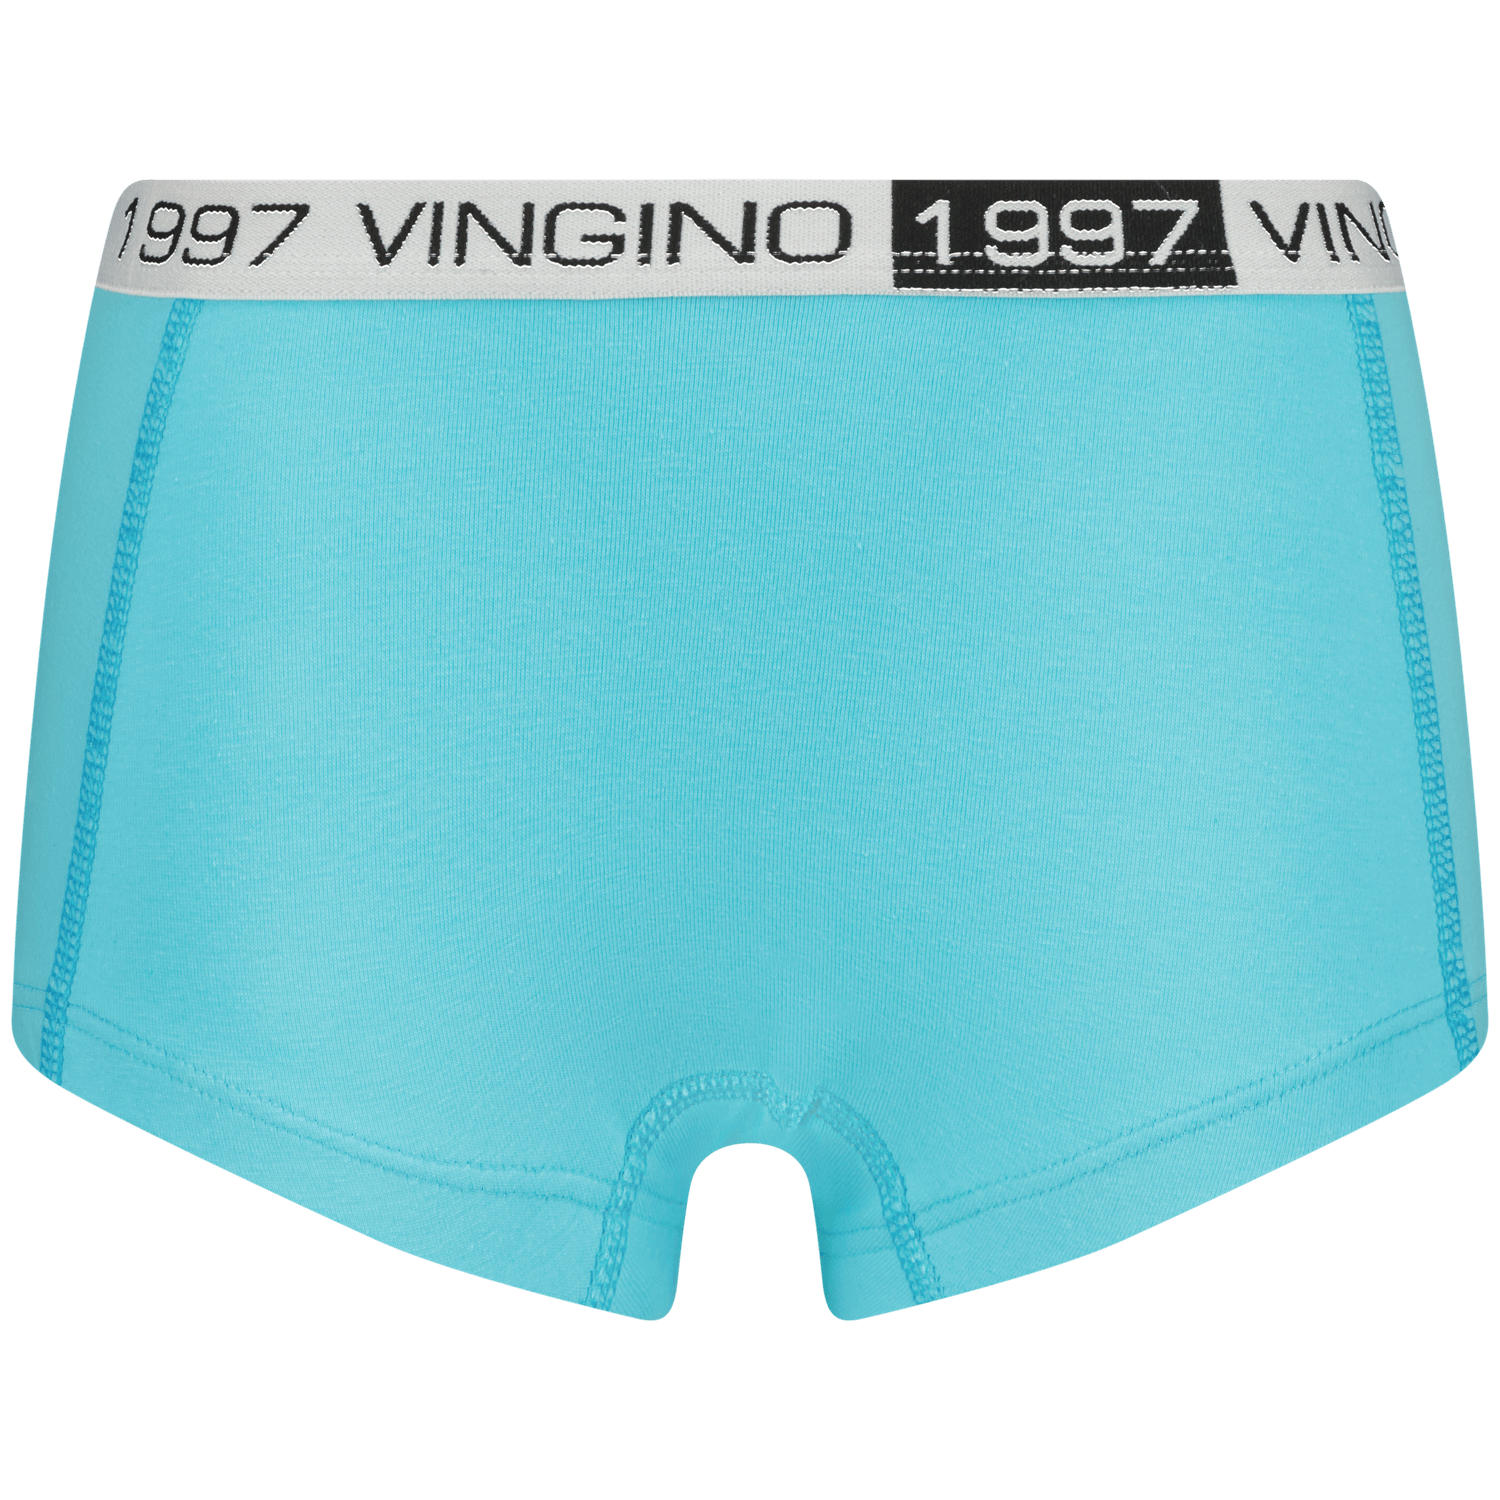 VINGINO Hipster G-so24-10 7 pack